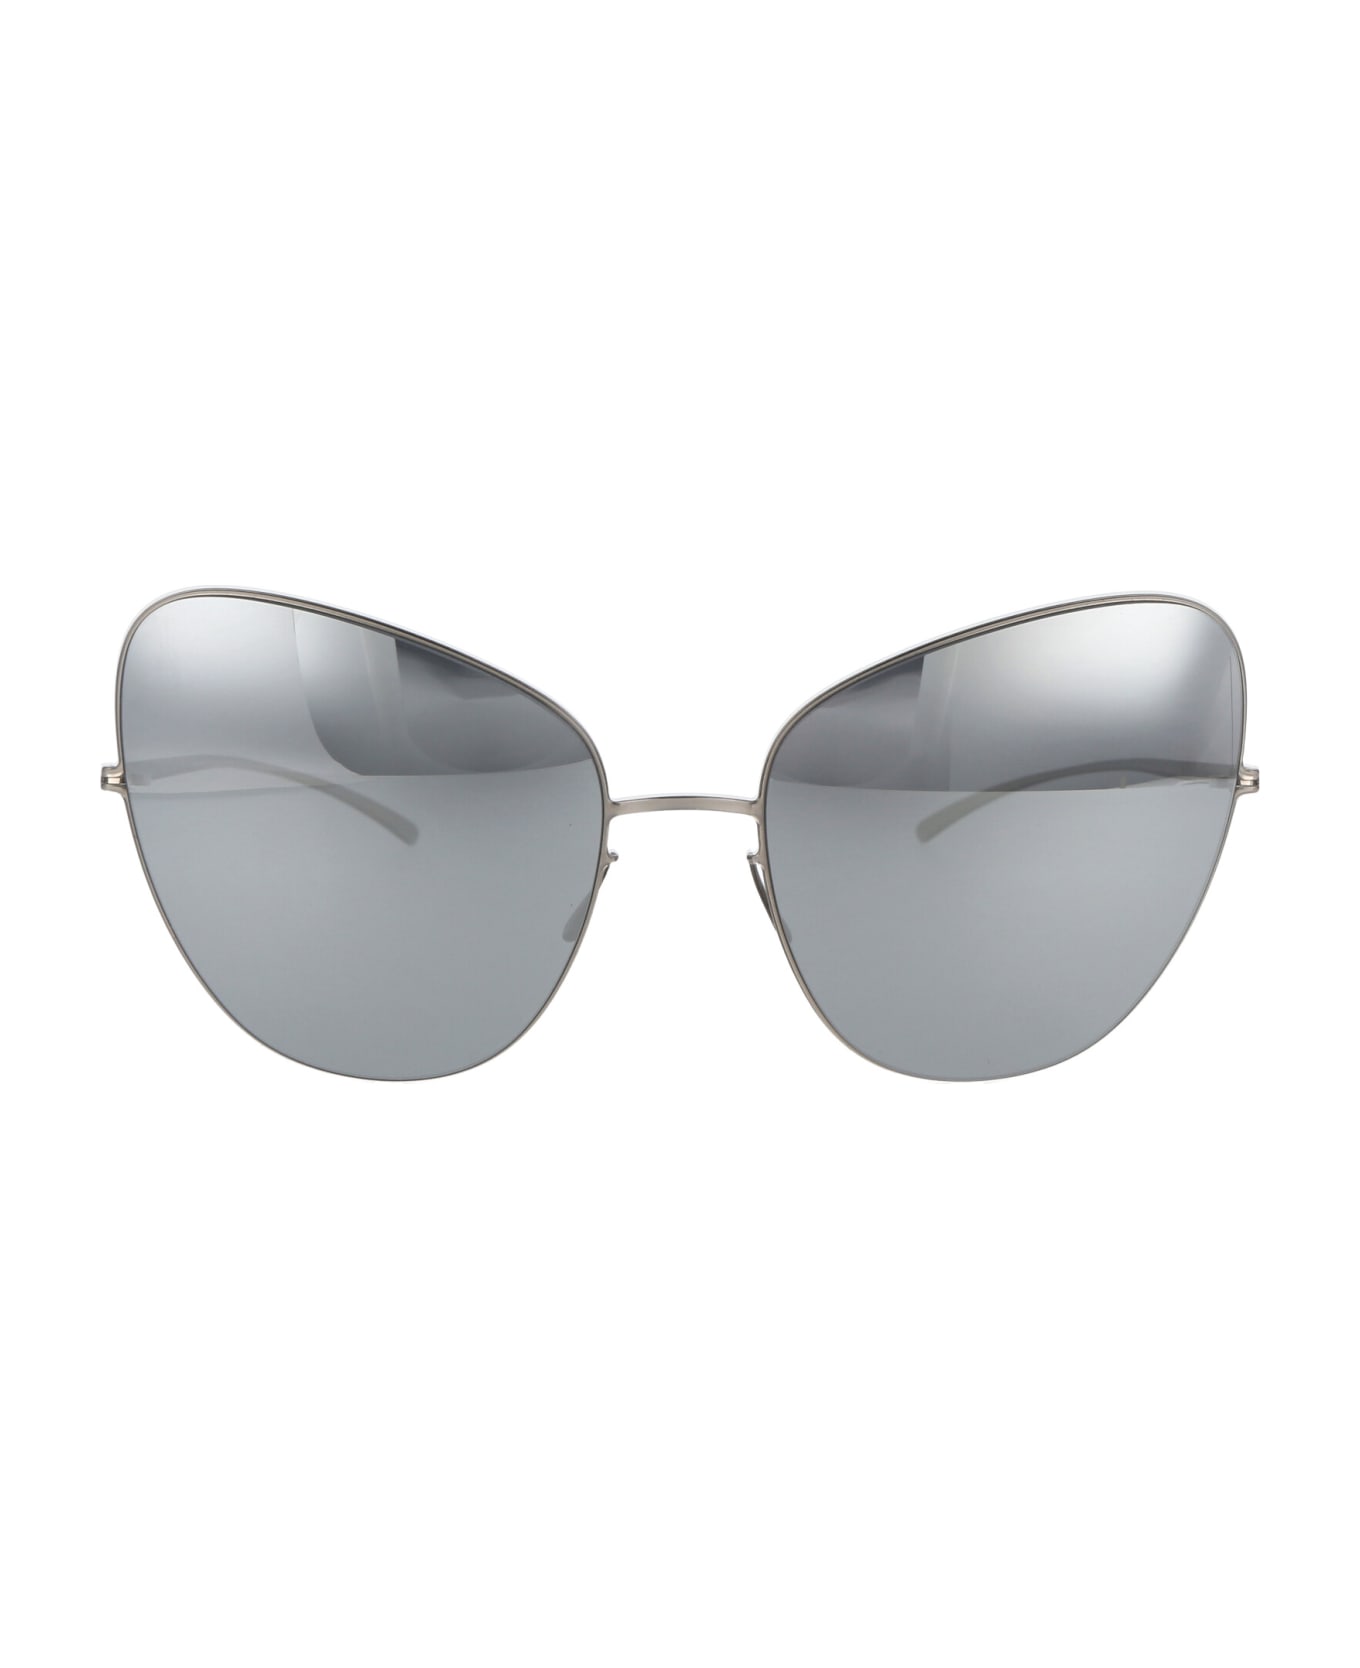 Mykita Mmesse018 Sunglasses - 187 E1 Silver Silver Flash